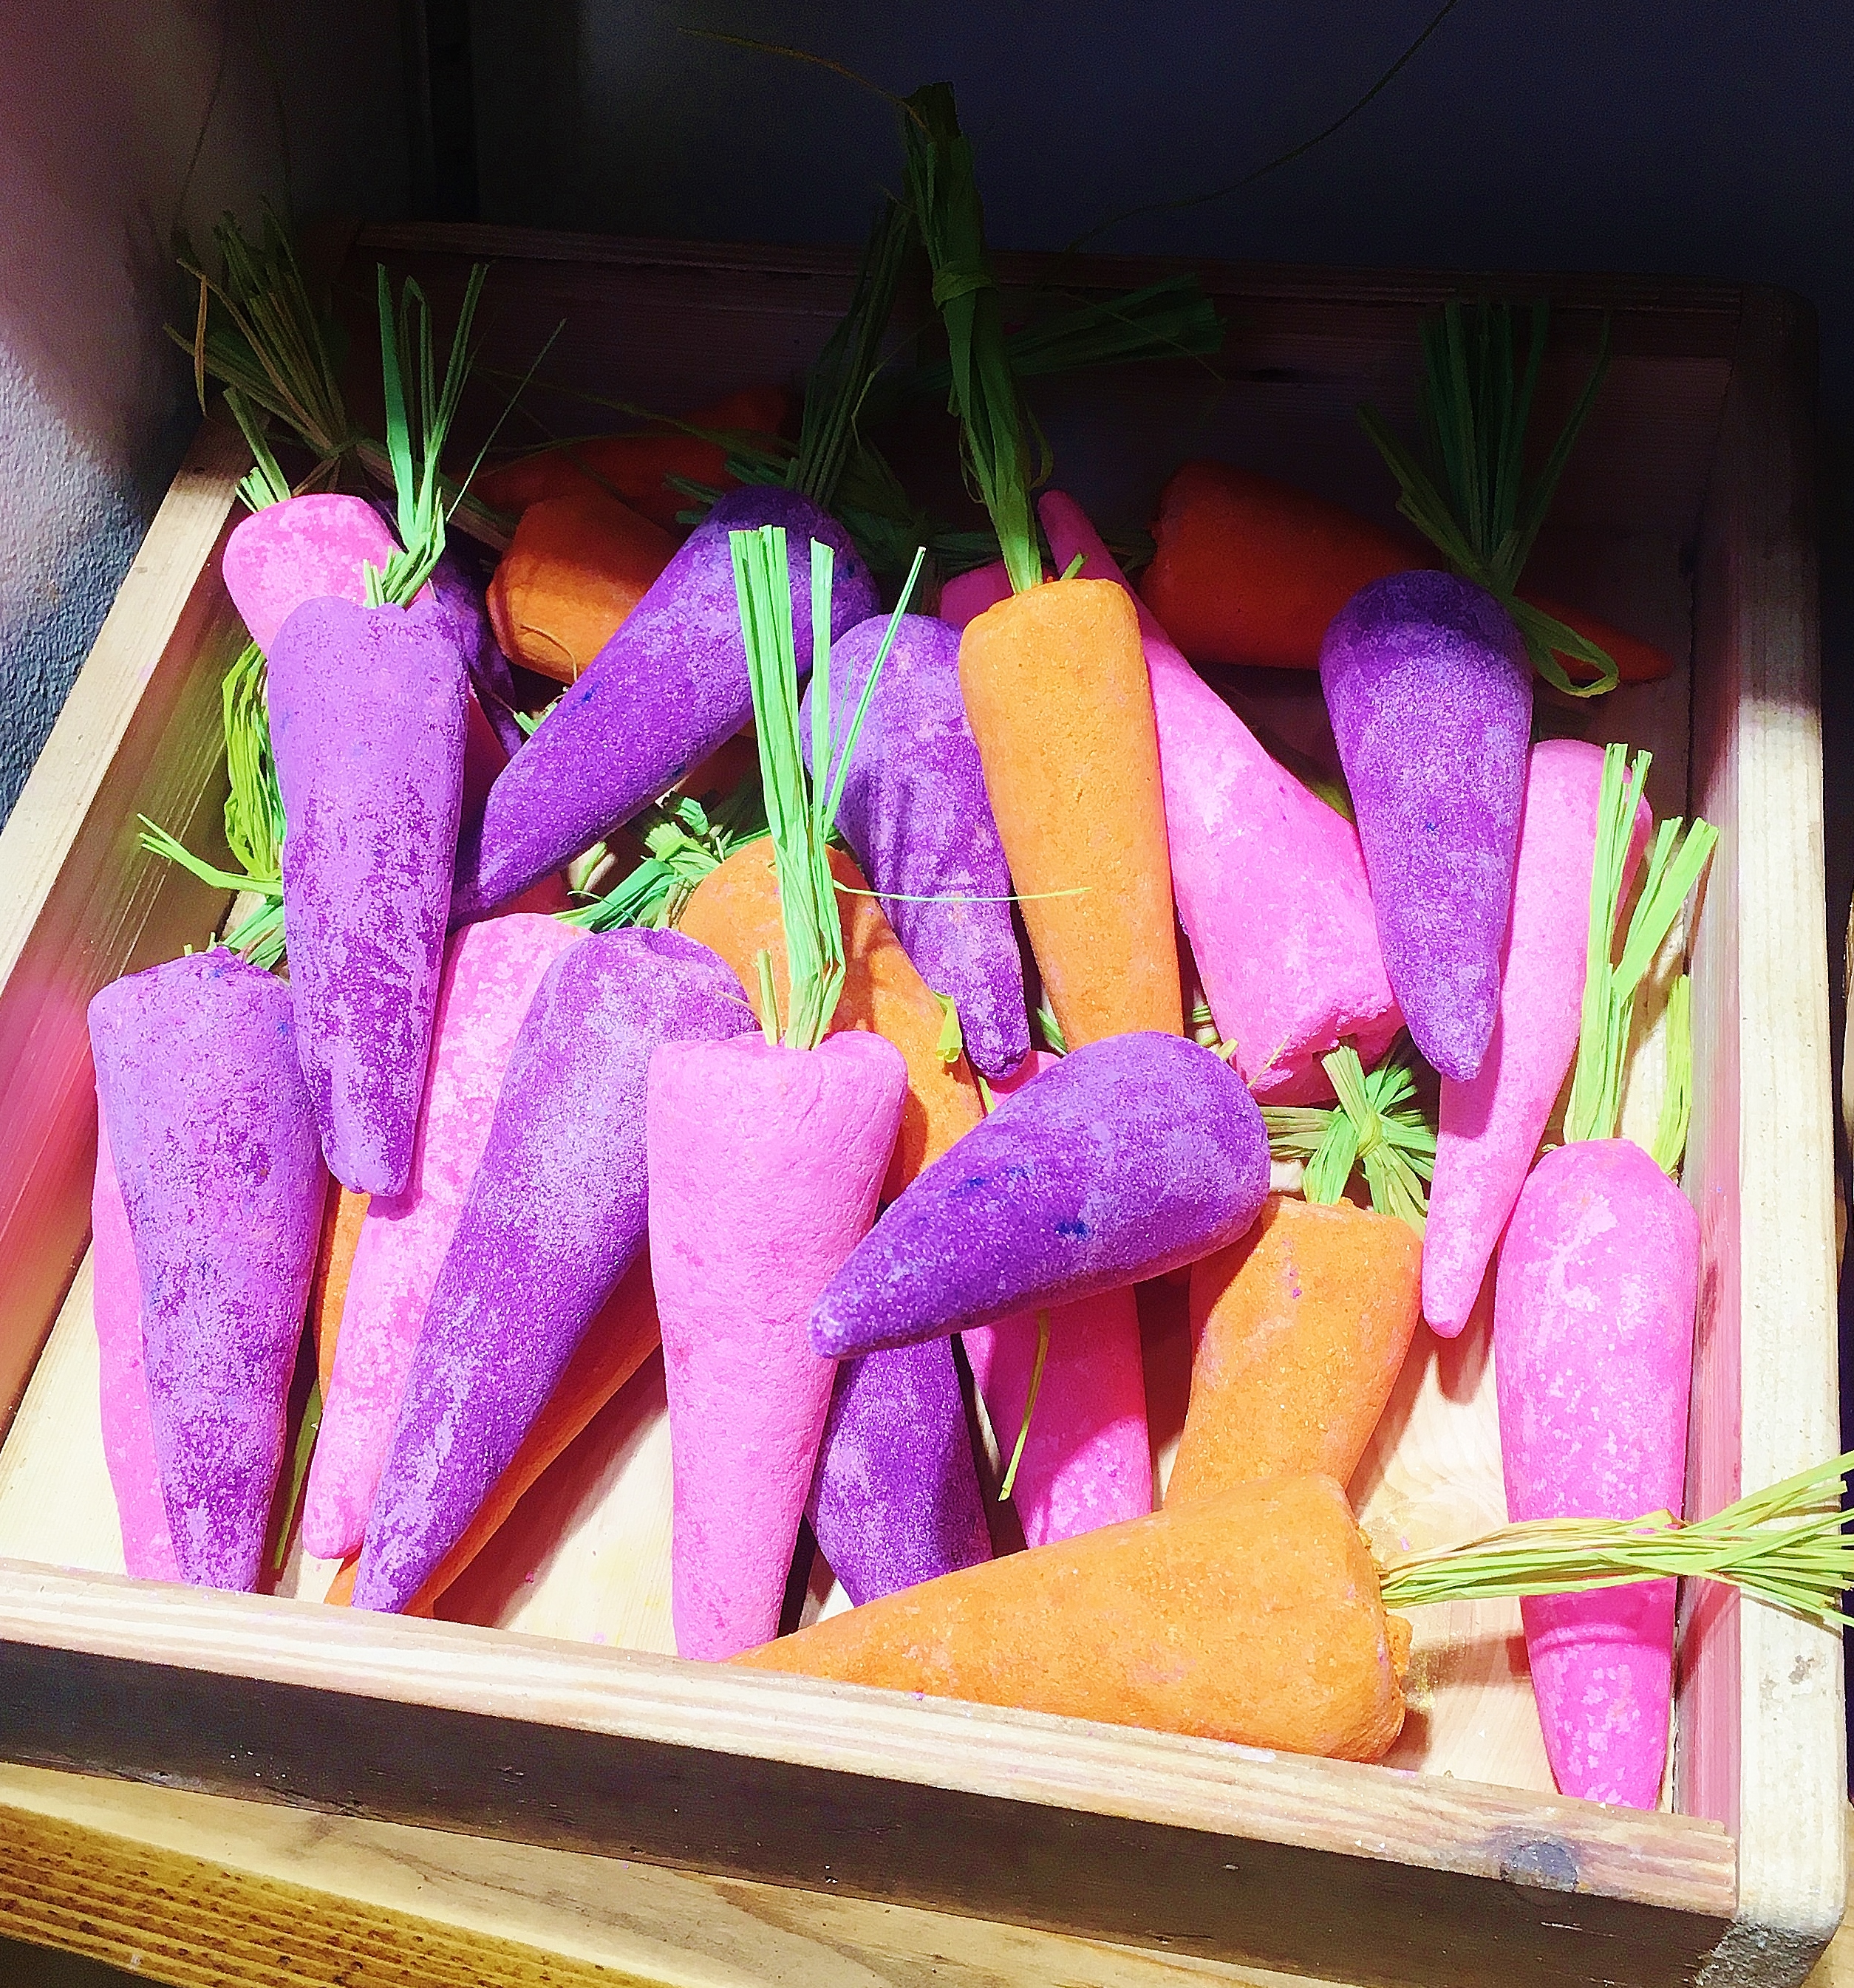 Lush pääsiäinen 2018 Bunch Of Carrots